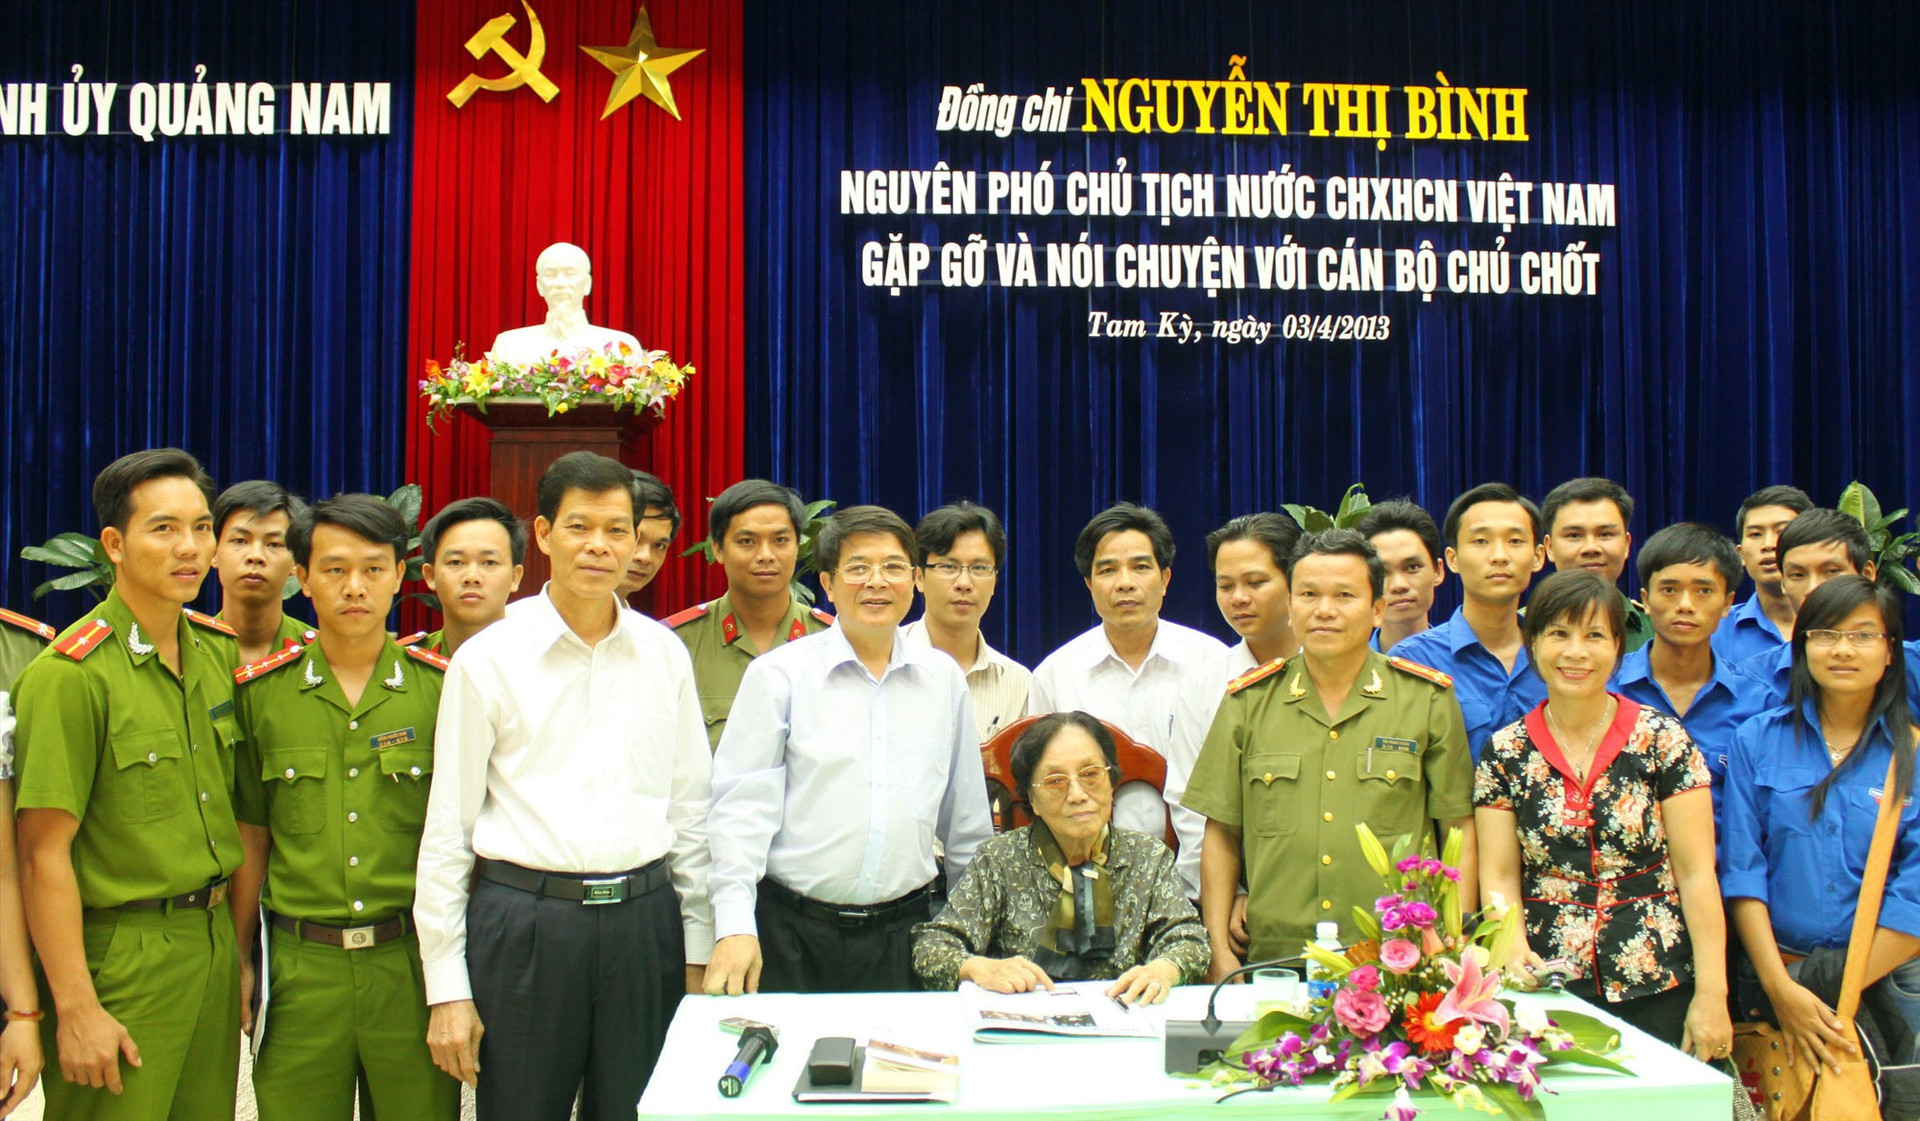 Nguyên Phó Chủ tịch nước Nguyễn Thị Bình về thăm quê, gặp gỡ và nói chuyện với cán bộ chủ chốt tỉnh Quảng Nam vào năm 2013. Ảnh: ĐÔNG KHÔI